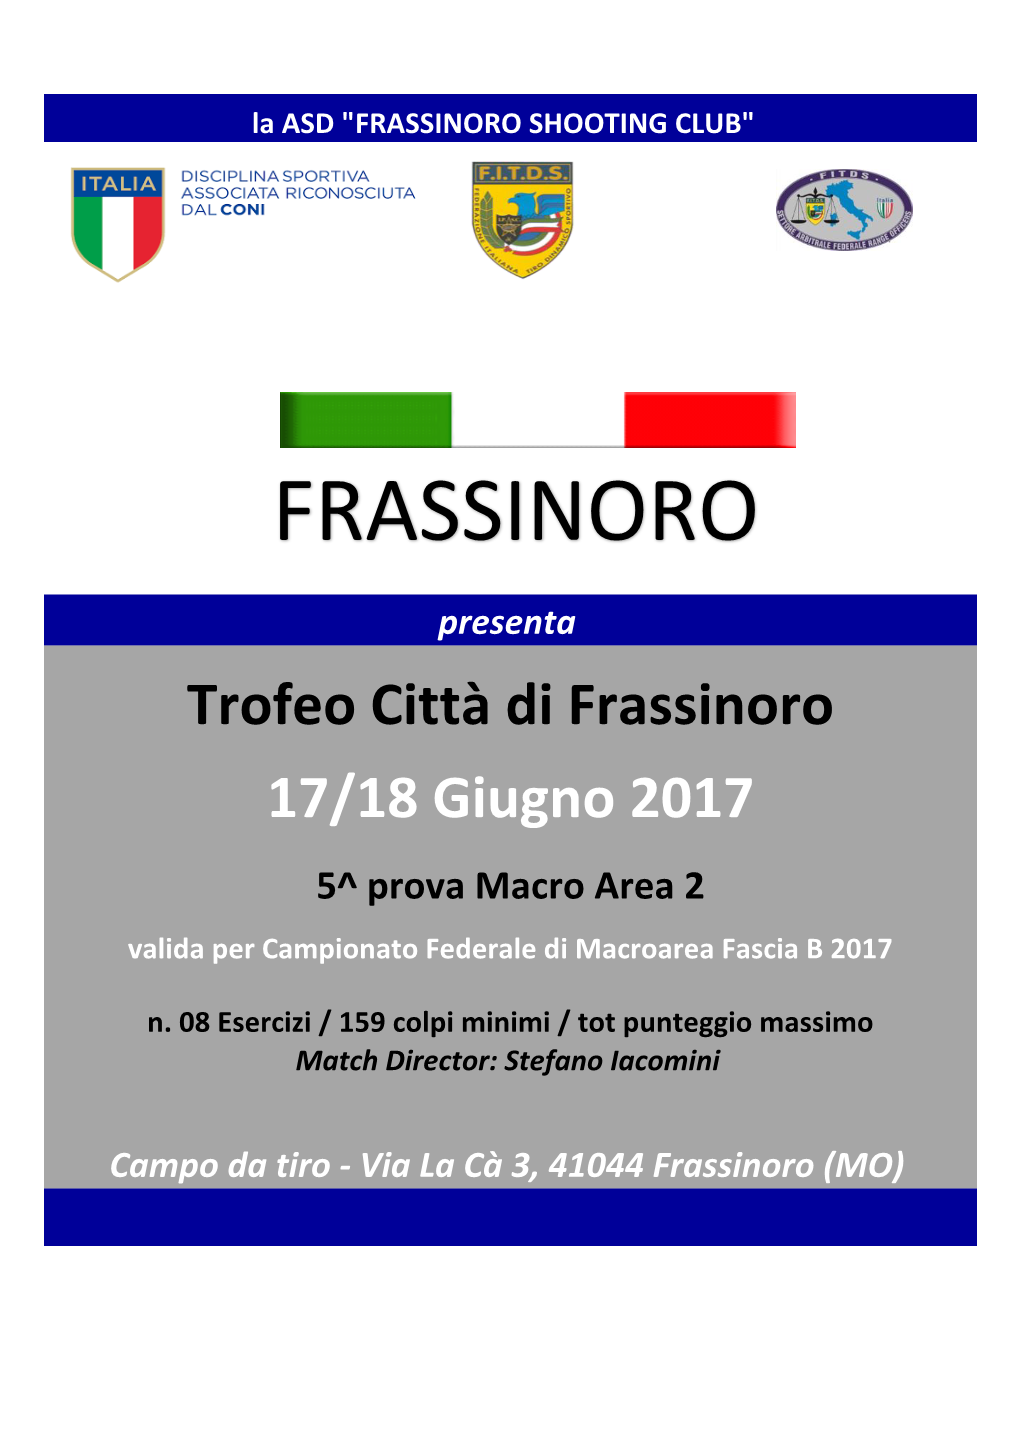 Frassinoro Shooting Club"